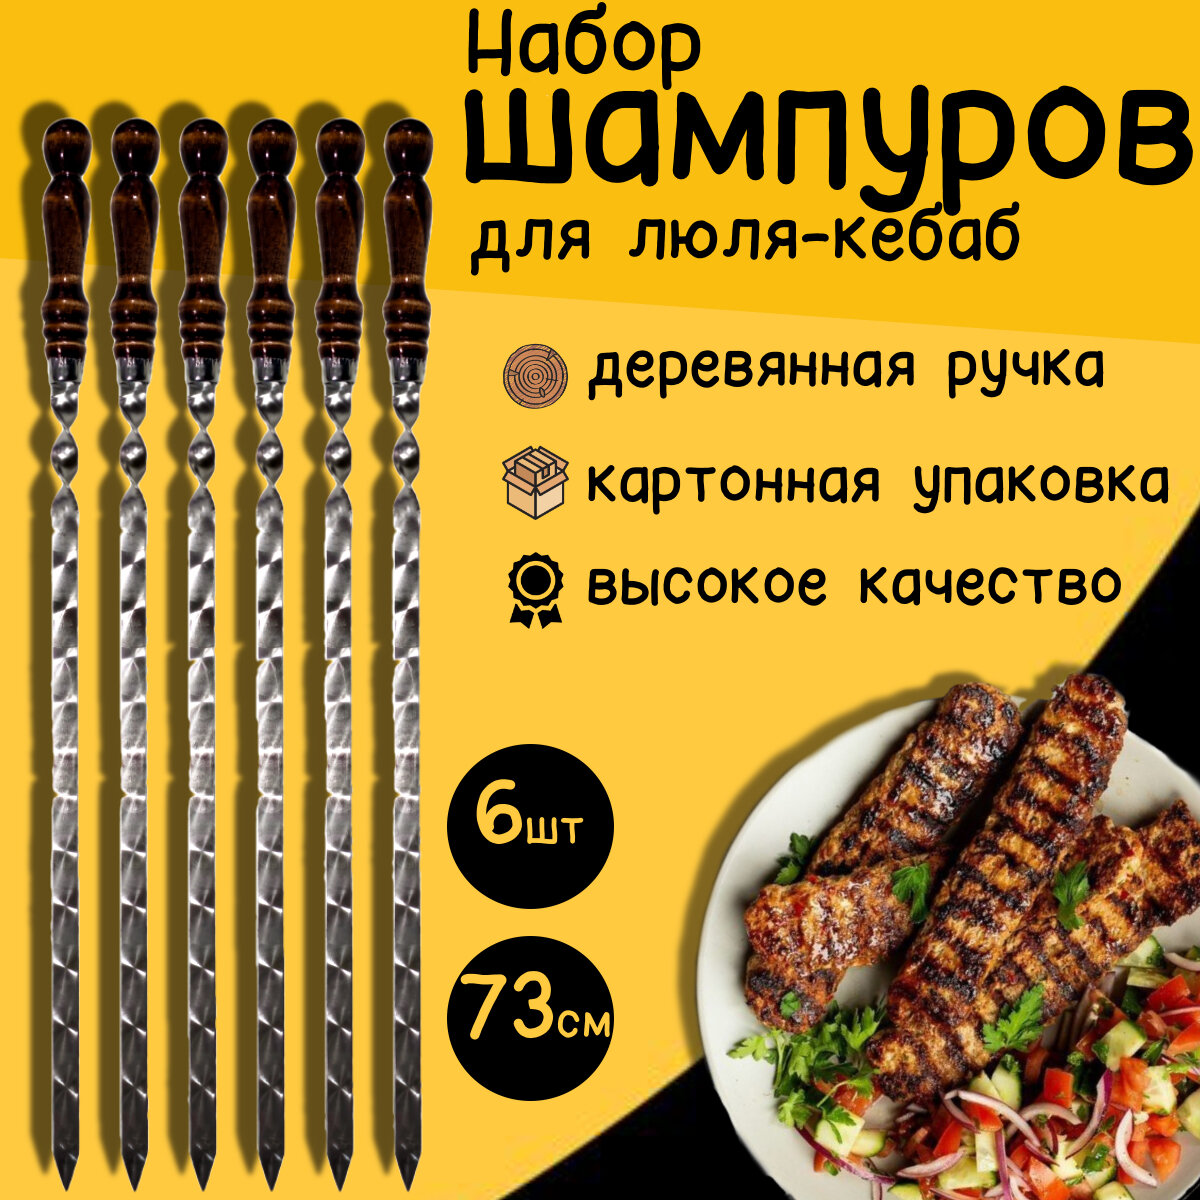 Шампуры для люля-кебаб с деревянной ручкой 73 см 6 штук